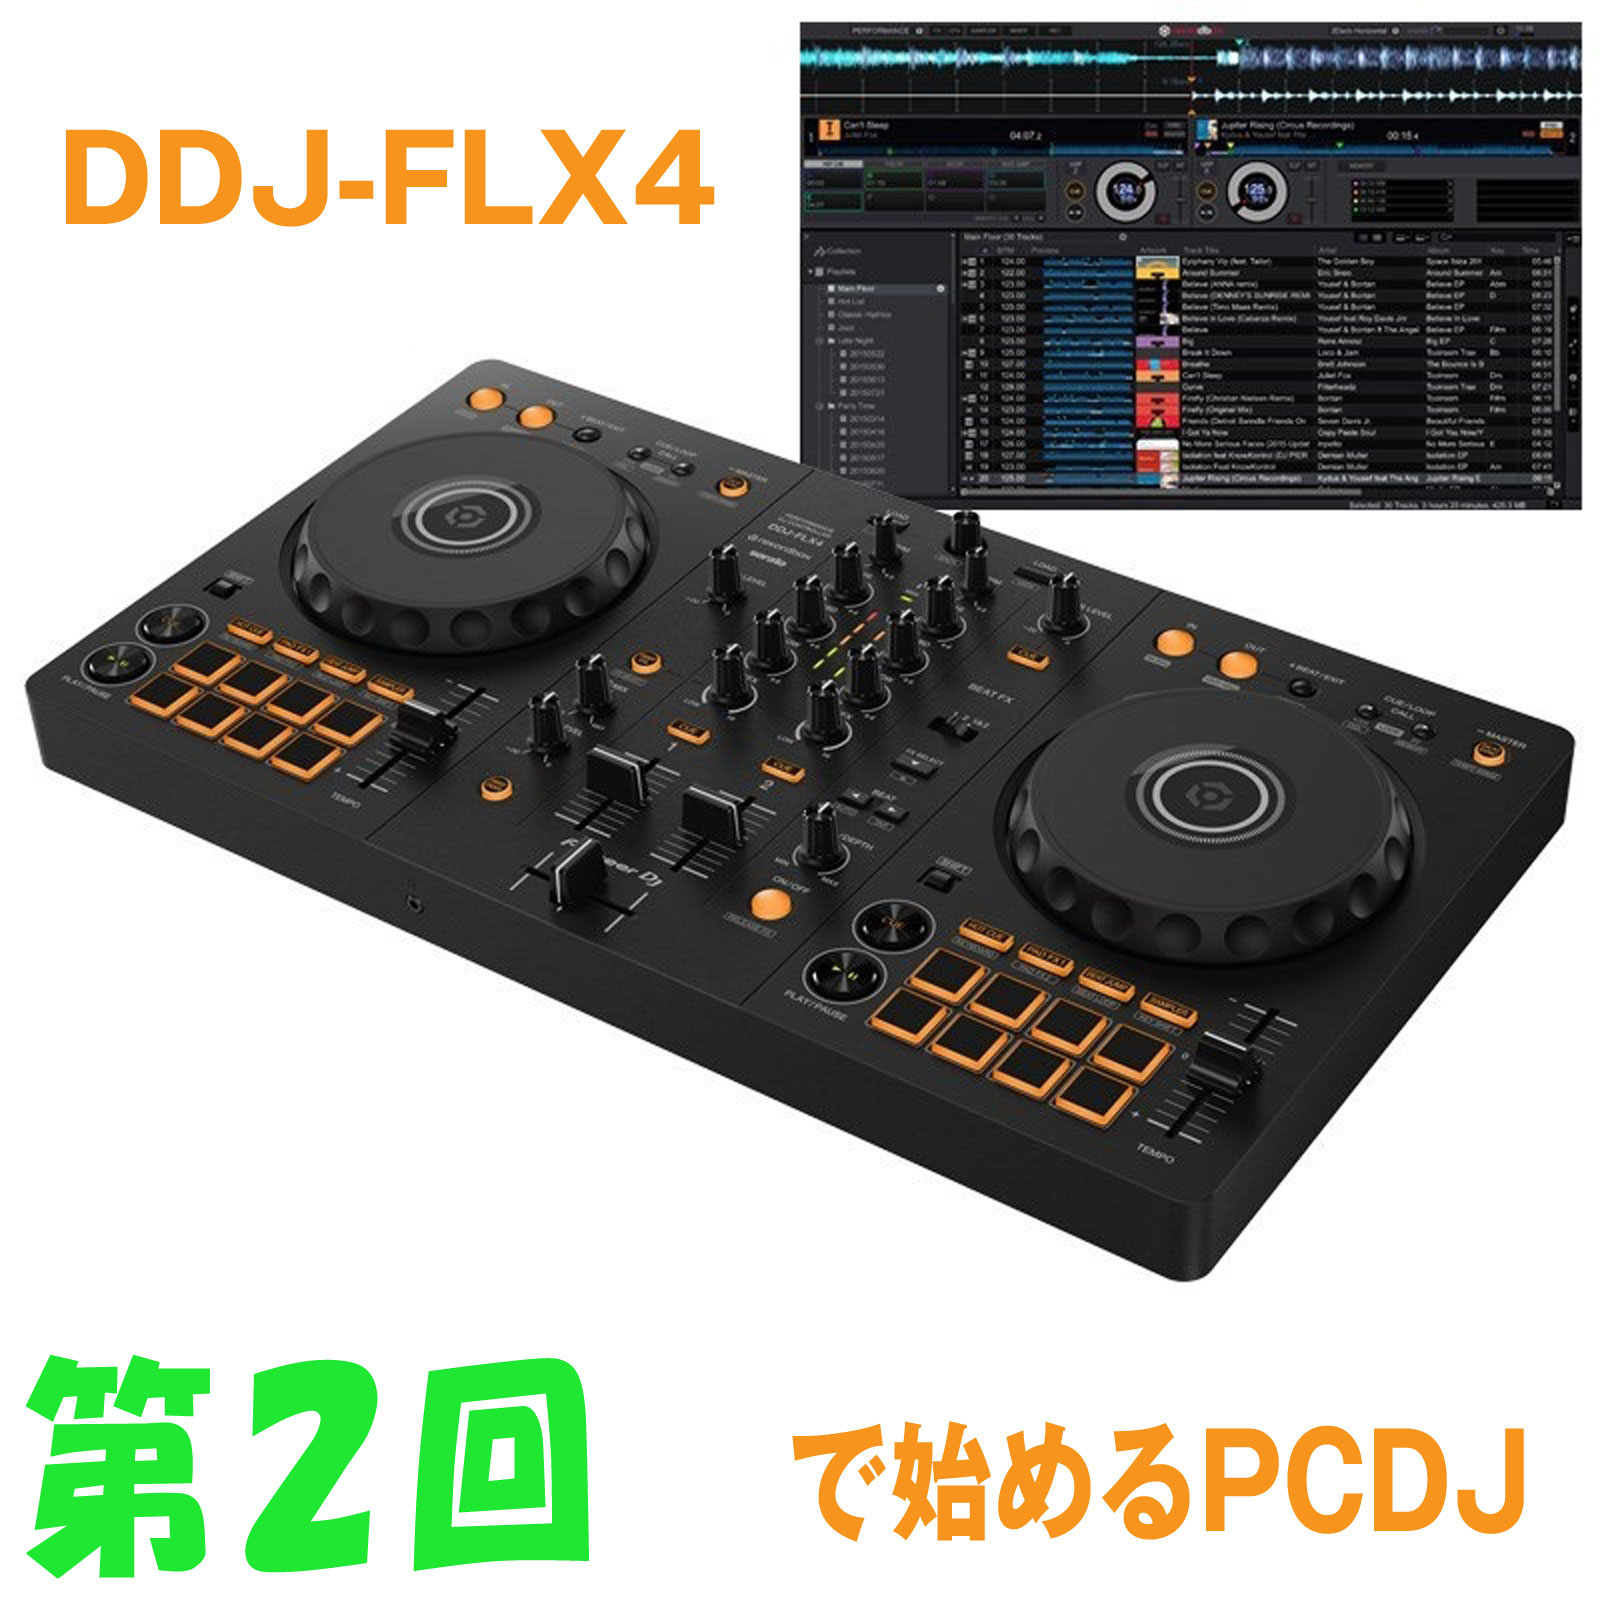 第2回】DDJ-FLX4で始めるPCDJ【音出し編】 | 池部楽器店 DJ機器情報サイト